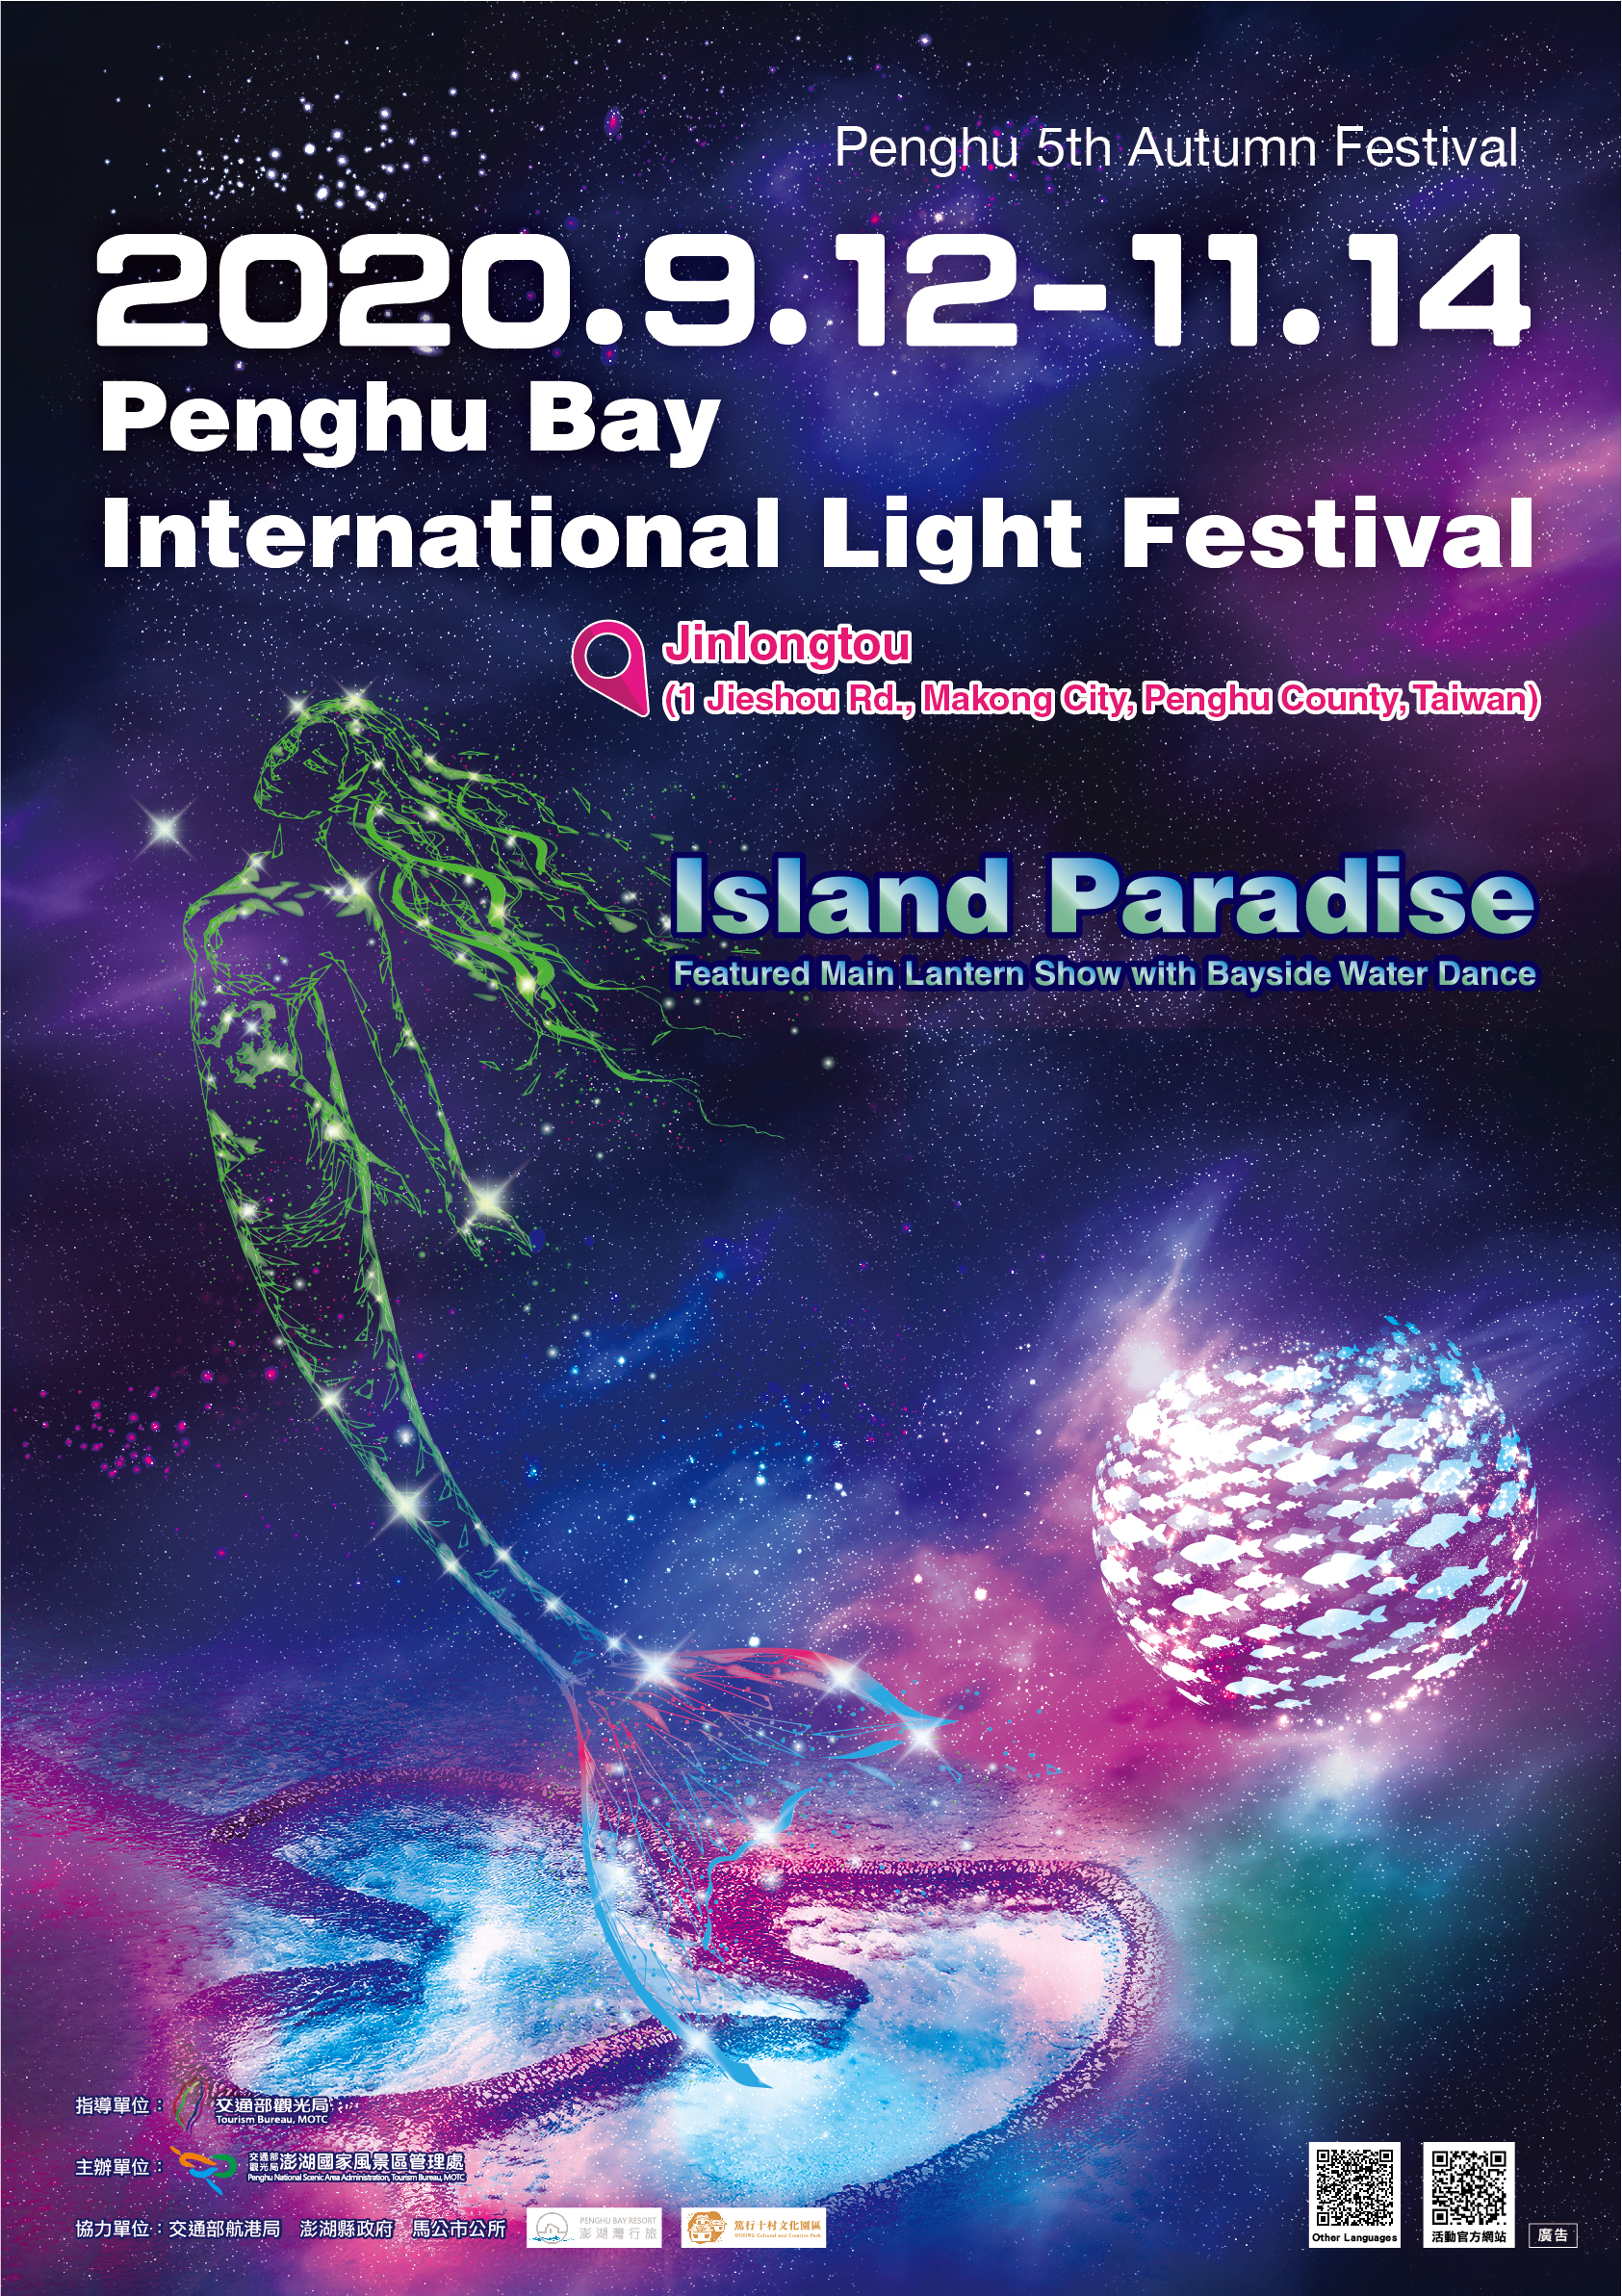 Penghu Bay International Light Festival